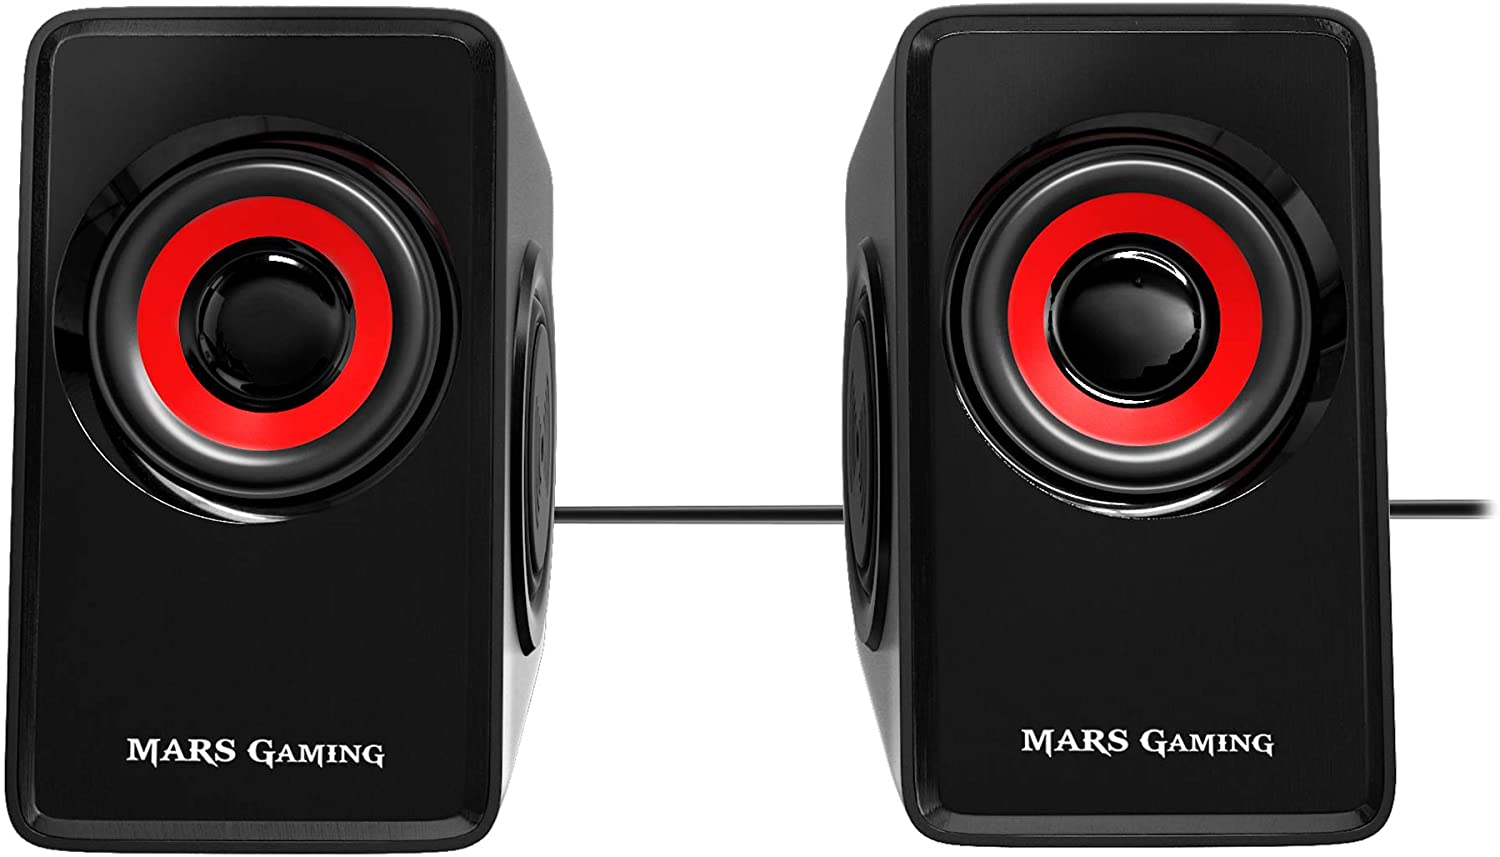 Mars Gaming MS1 Enceintes 2.0 10W USB, Jack 3.5mm - 6 Pilotes Son : 2 Actifs et 4 Passifs - Contrôle du Volume